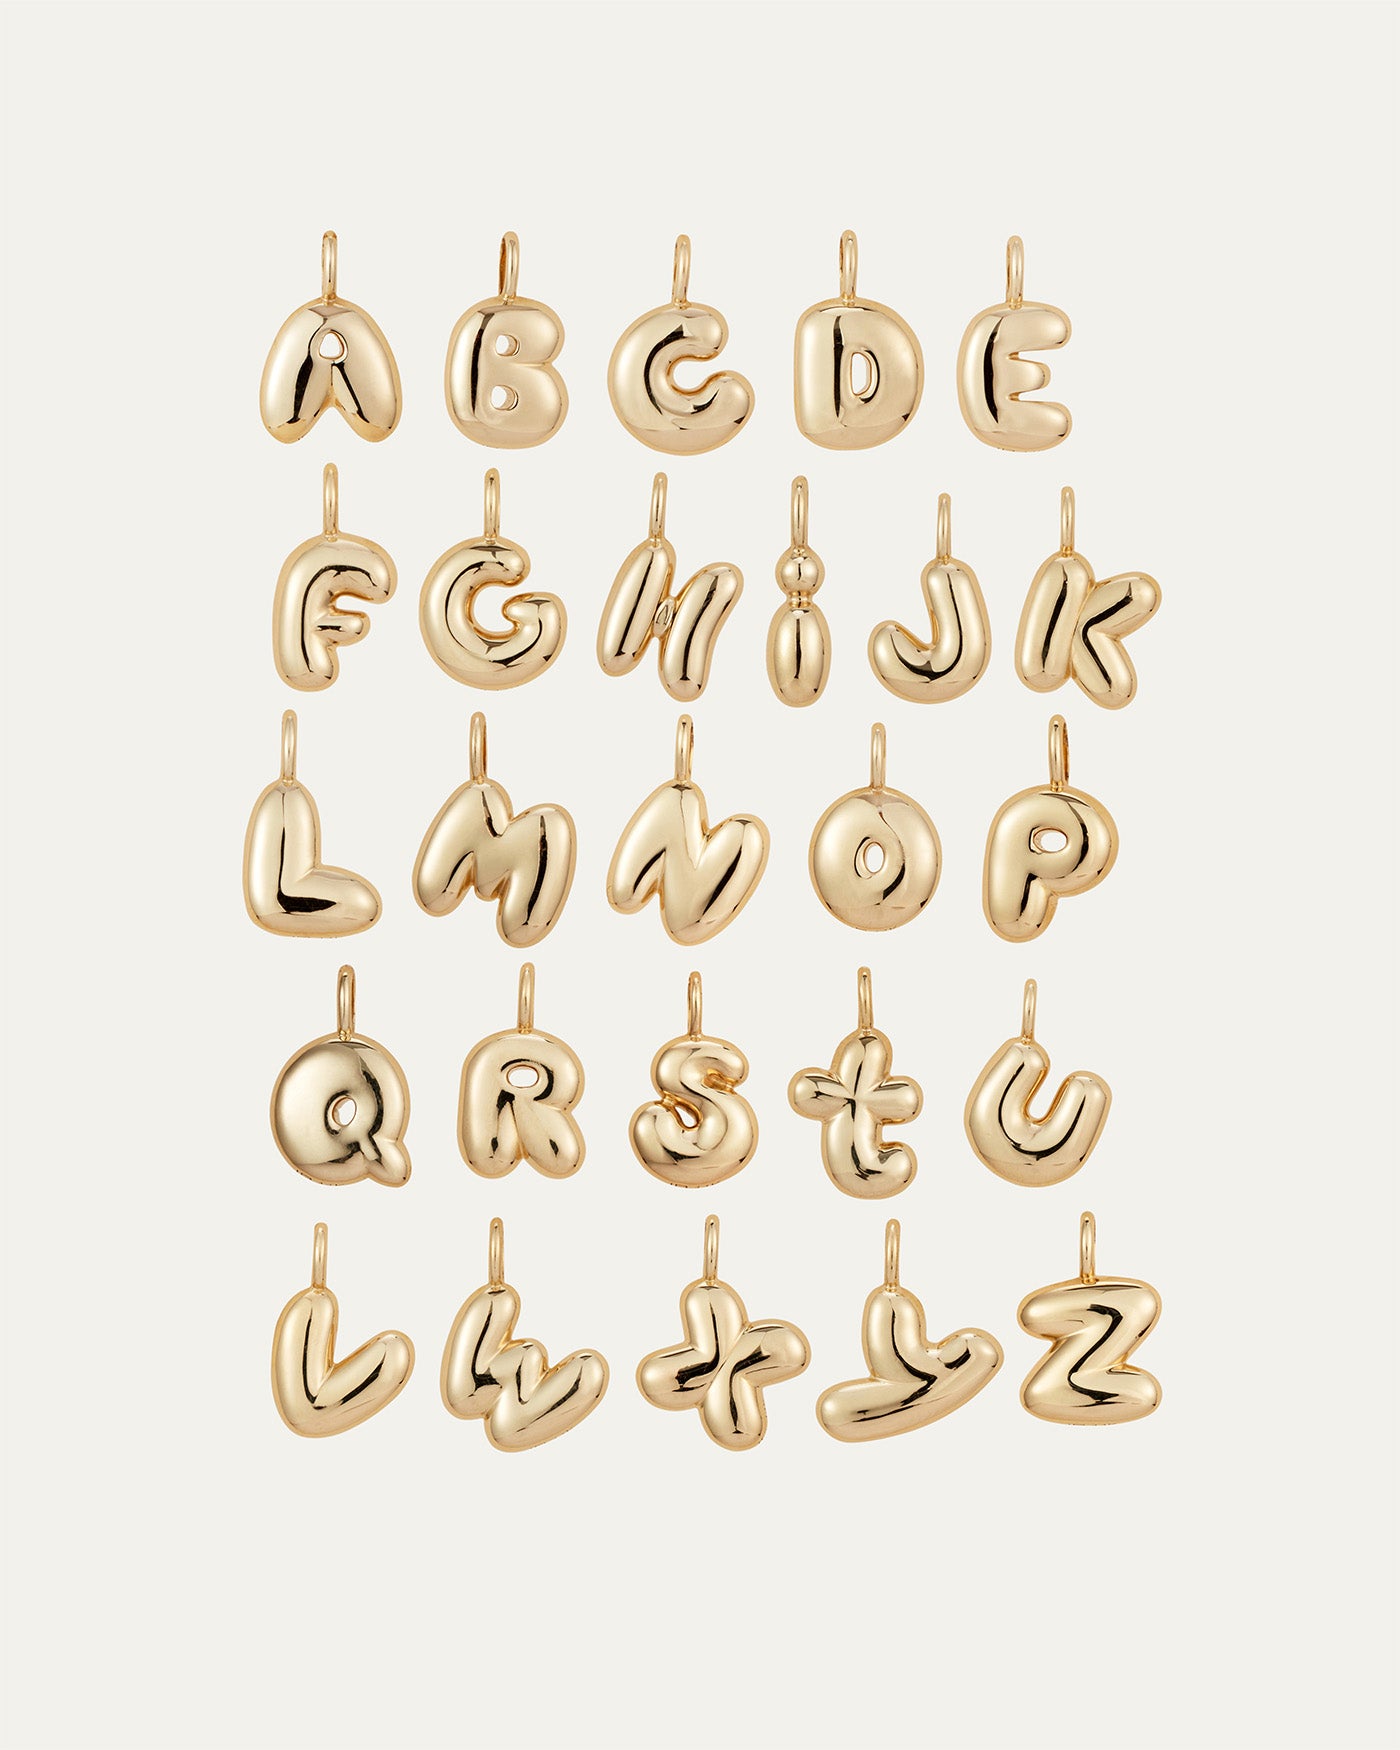 14K Gold Bubble Letter Necklace - K